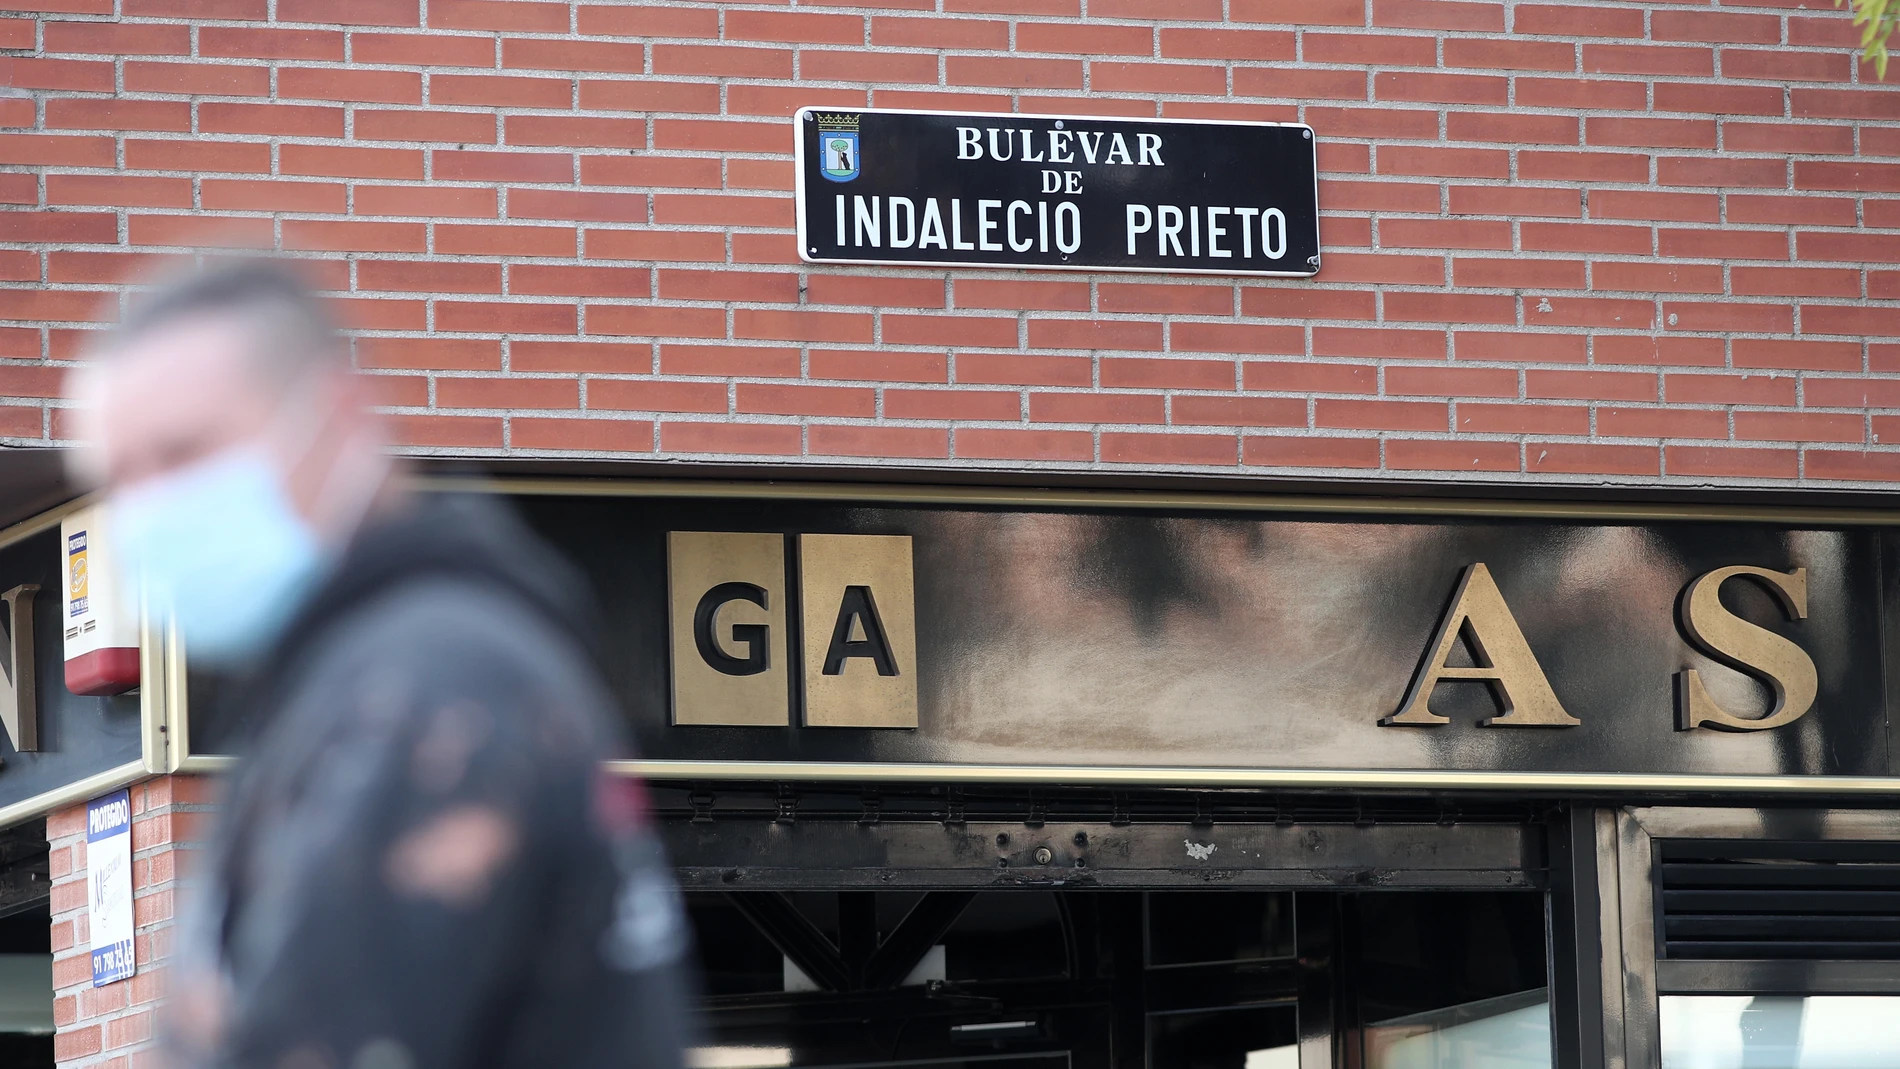 Placa del Bulevar Indalecio Prieto, en Madrid, al día siguiente del acuerdo municipal para su retirada